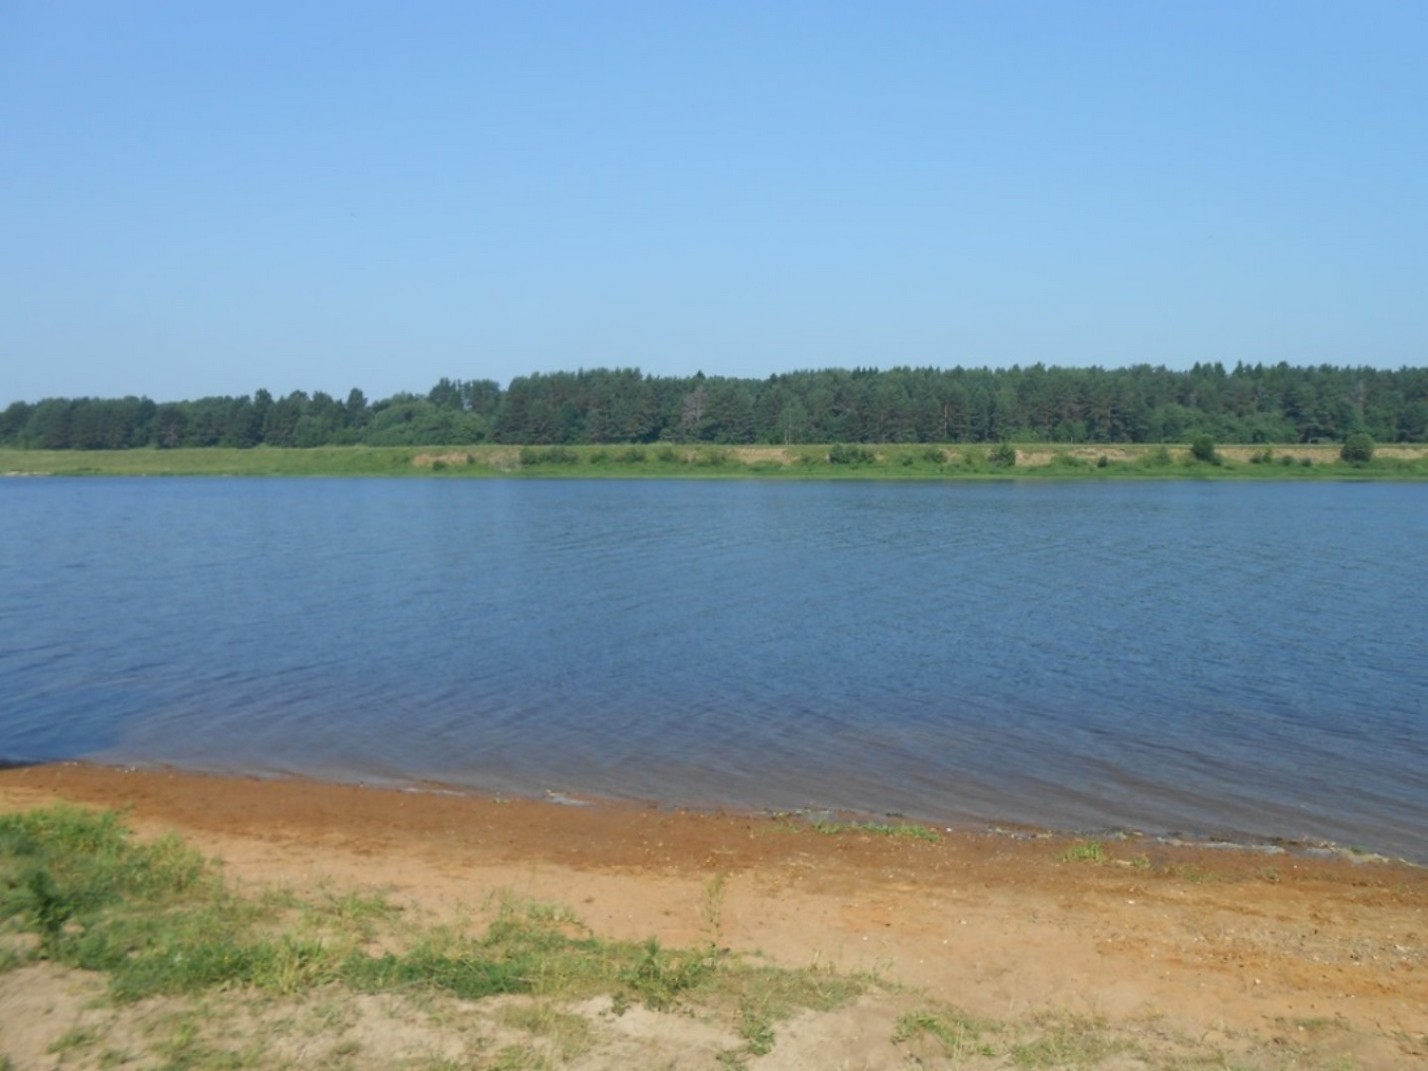 Берег реки Волга рядом с коттеджным посёлком "Прудище" - июнь 2013 г.